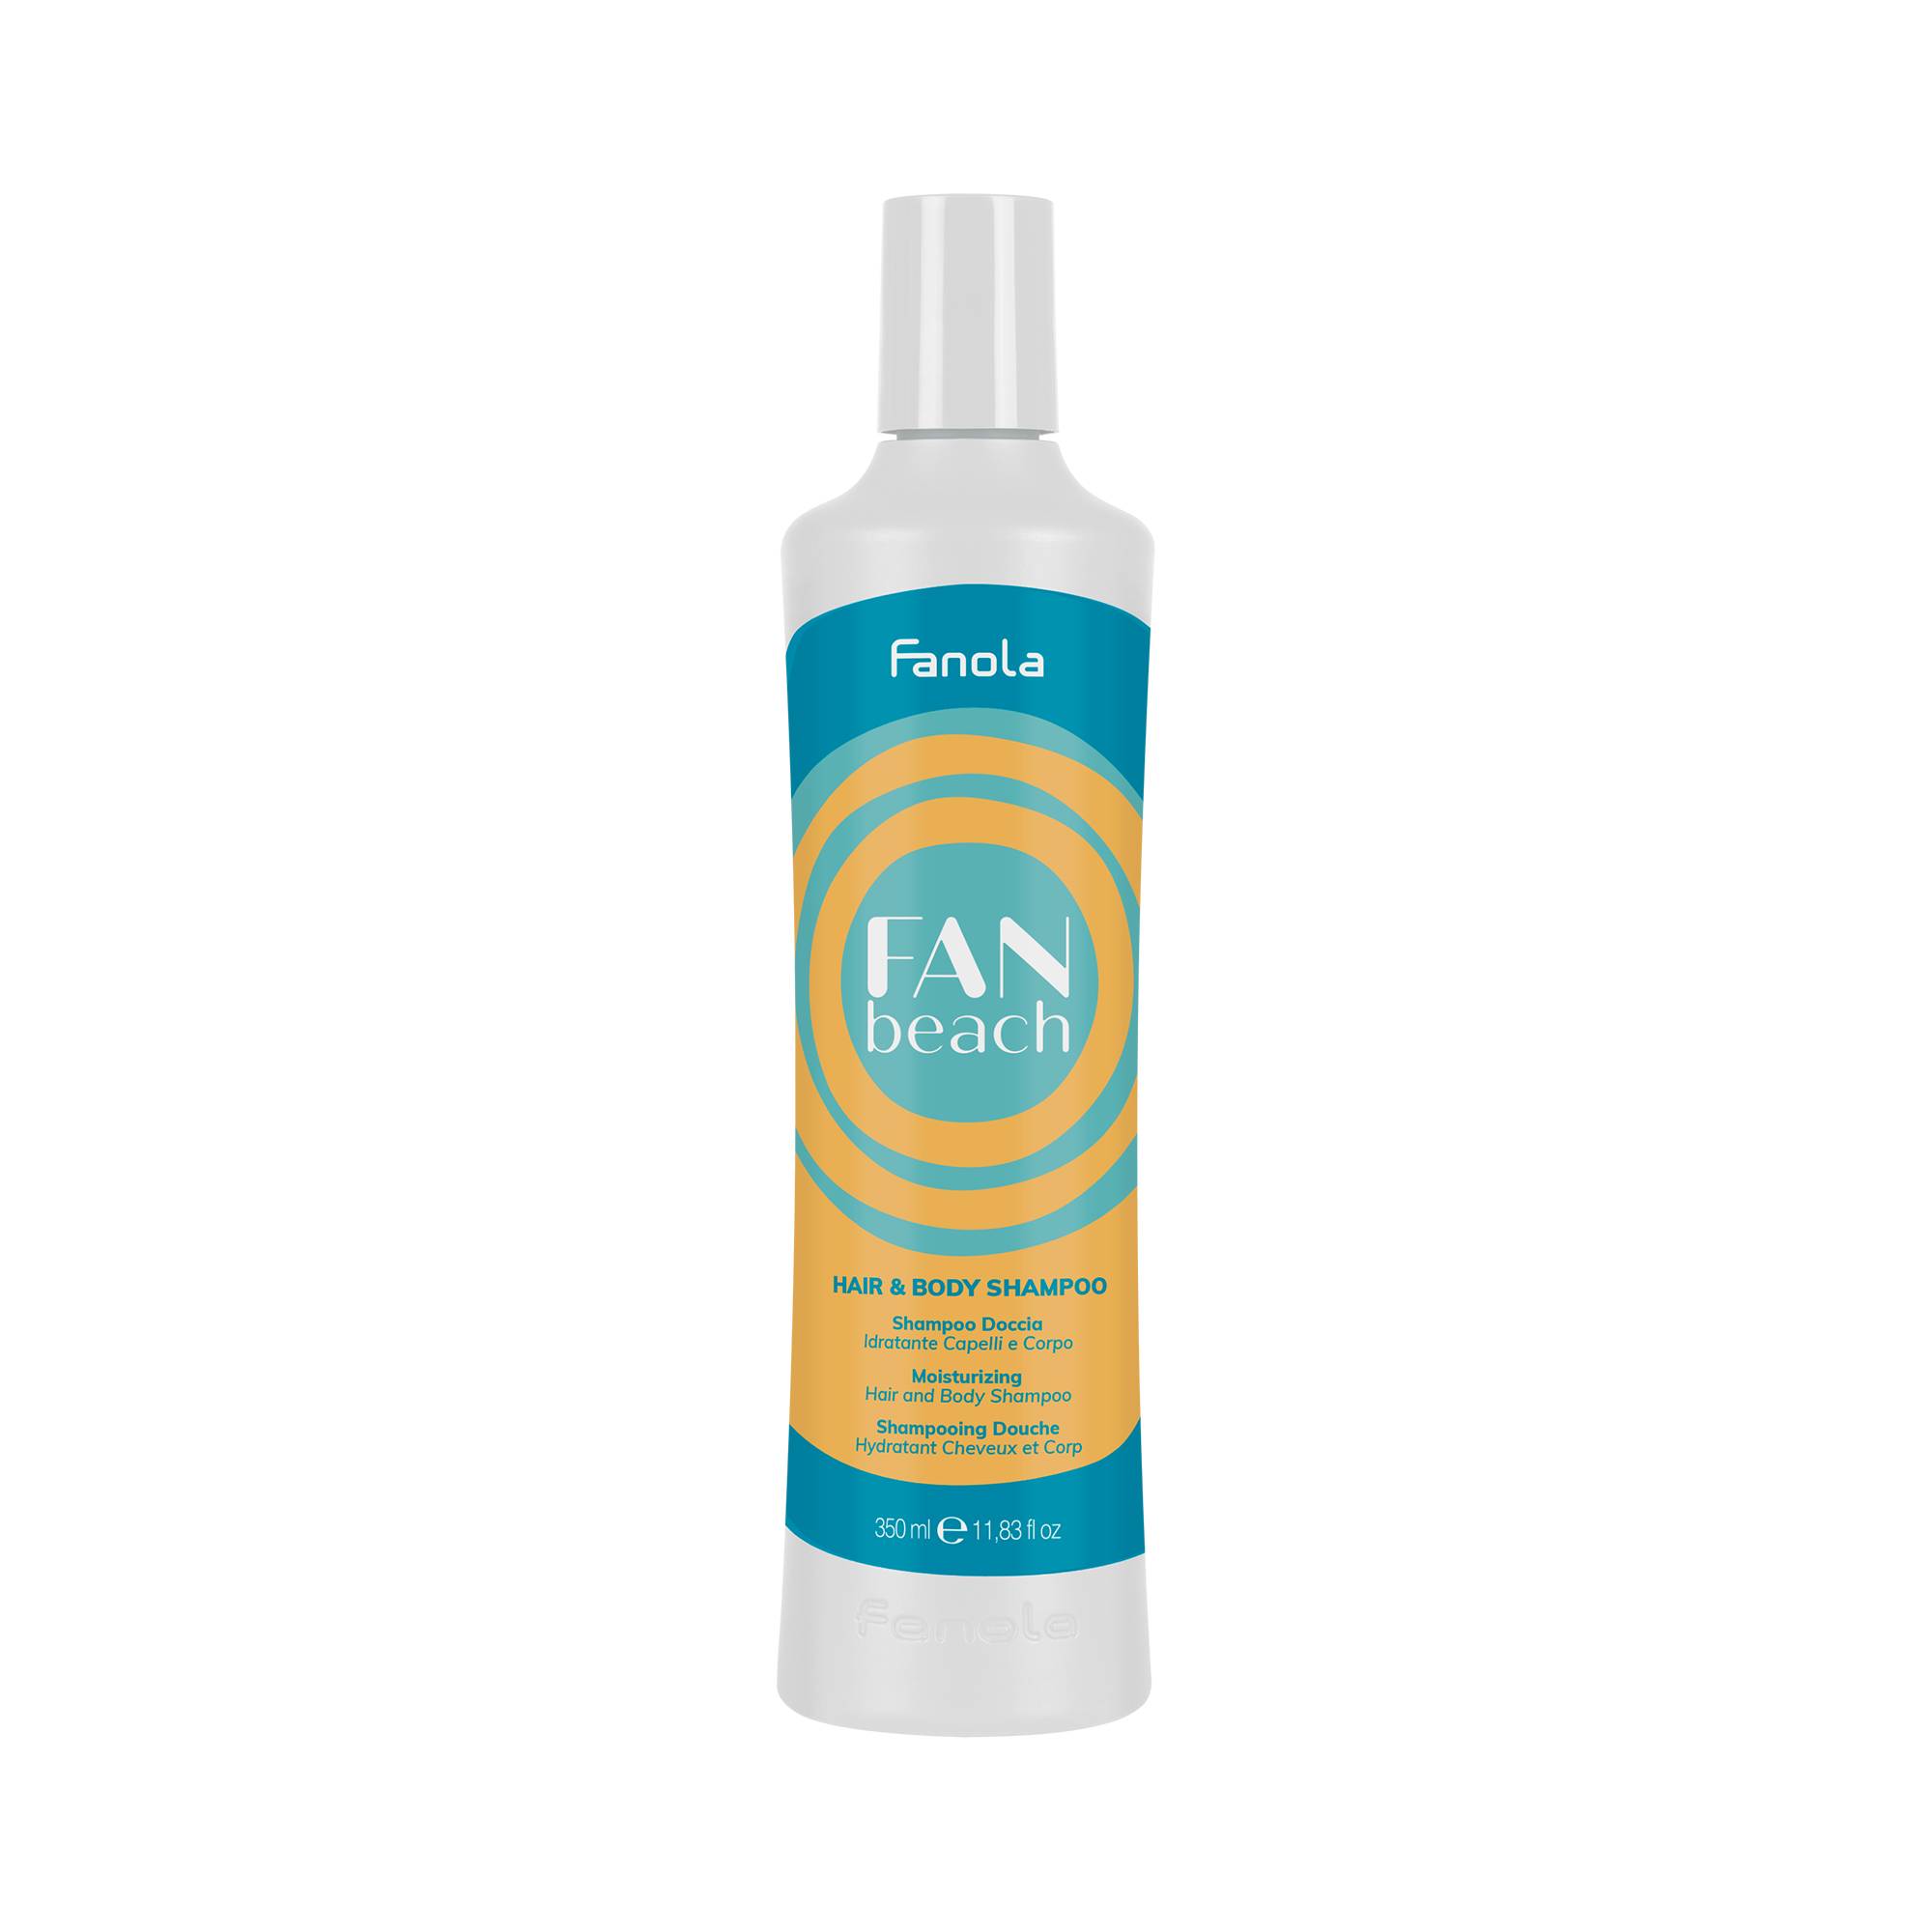 Shampoing douche hydratant Cheveux et corps FanBeach de la marque Fanola Contenance 350ml - 1